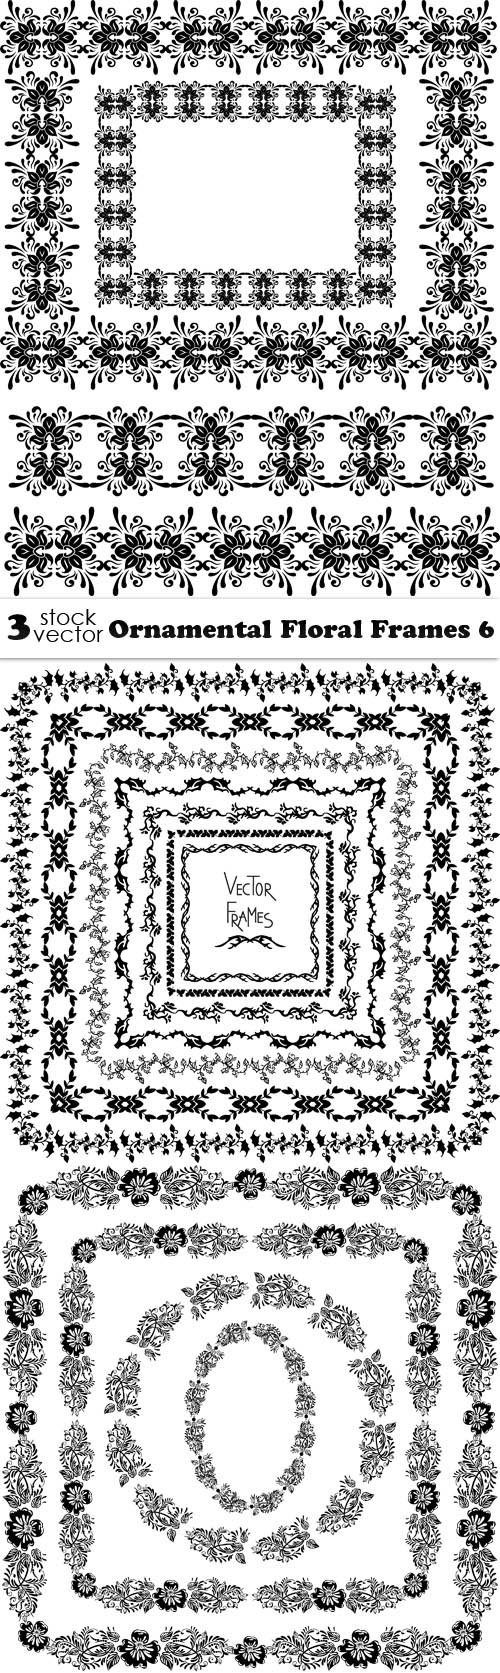 Vectors - Ornamental Floral Frames 6